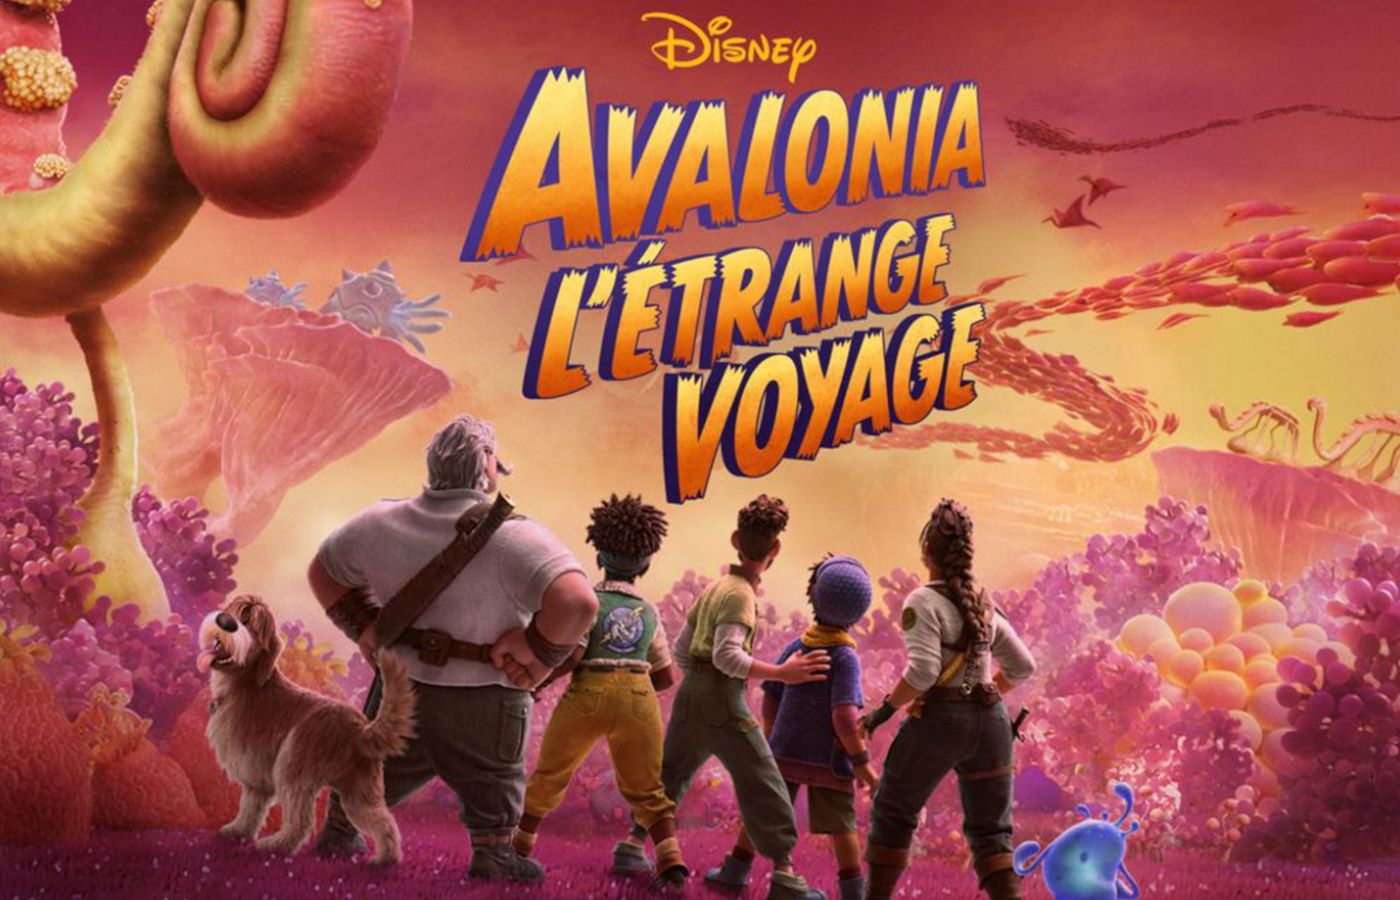 Disney+ : très attendu, le film Avalonia, l'étrange voyage sort aujourd'hui sur la plateforme